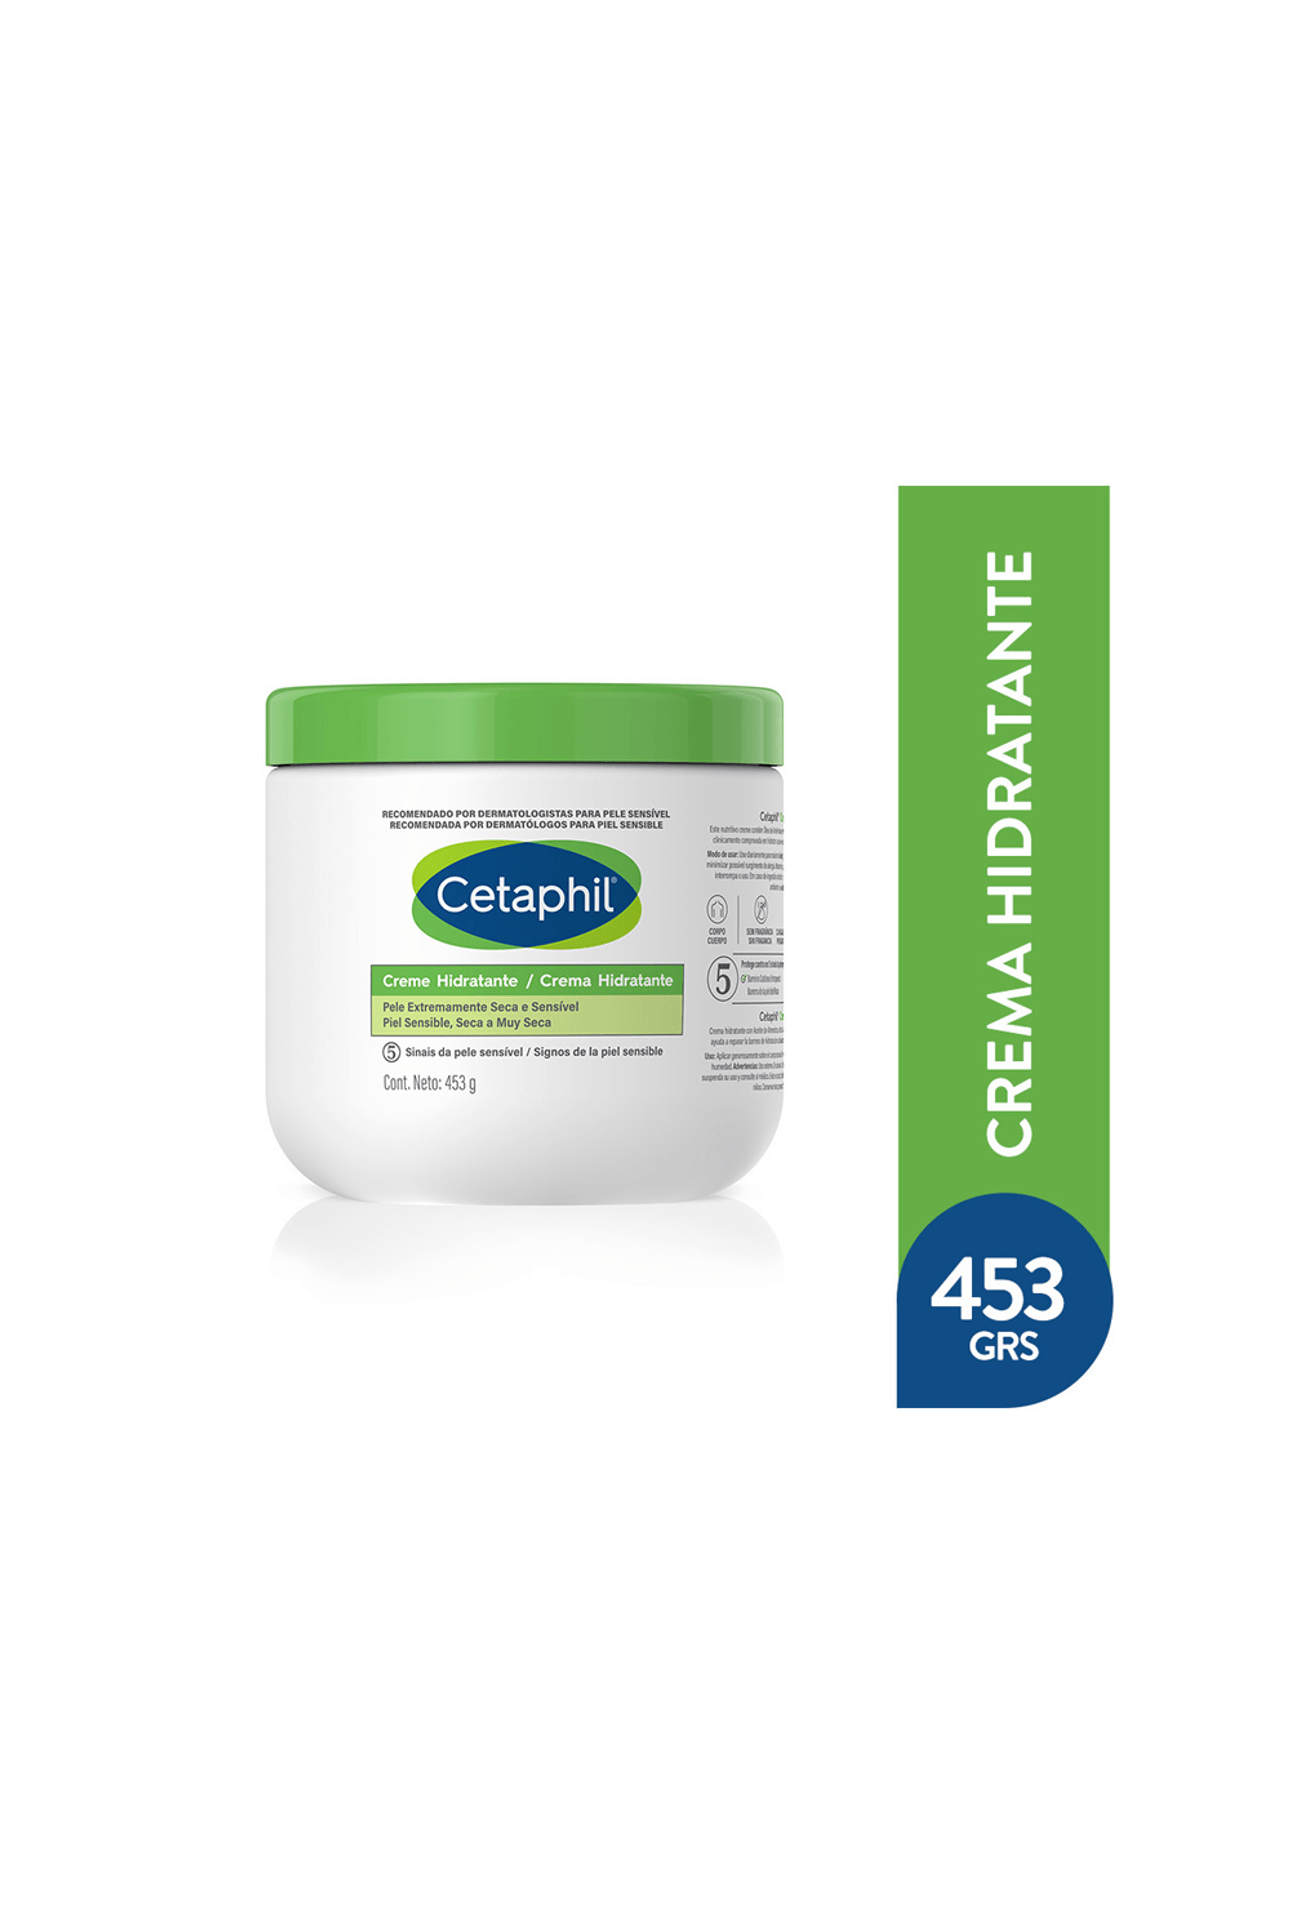 Cetaphil -Crema Hidratante Cetaphil x 453 gr-3466320012838